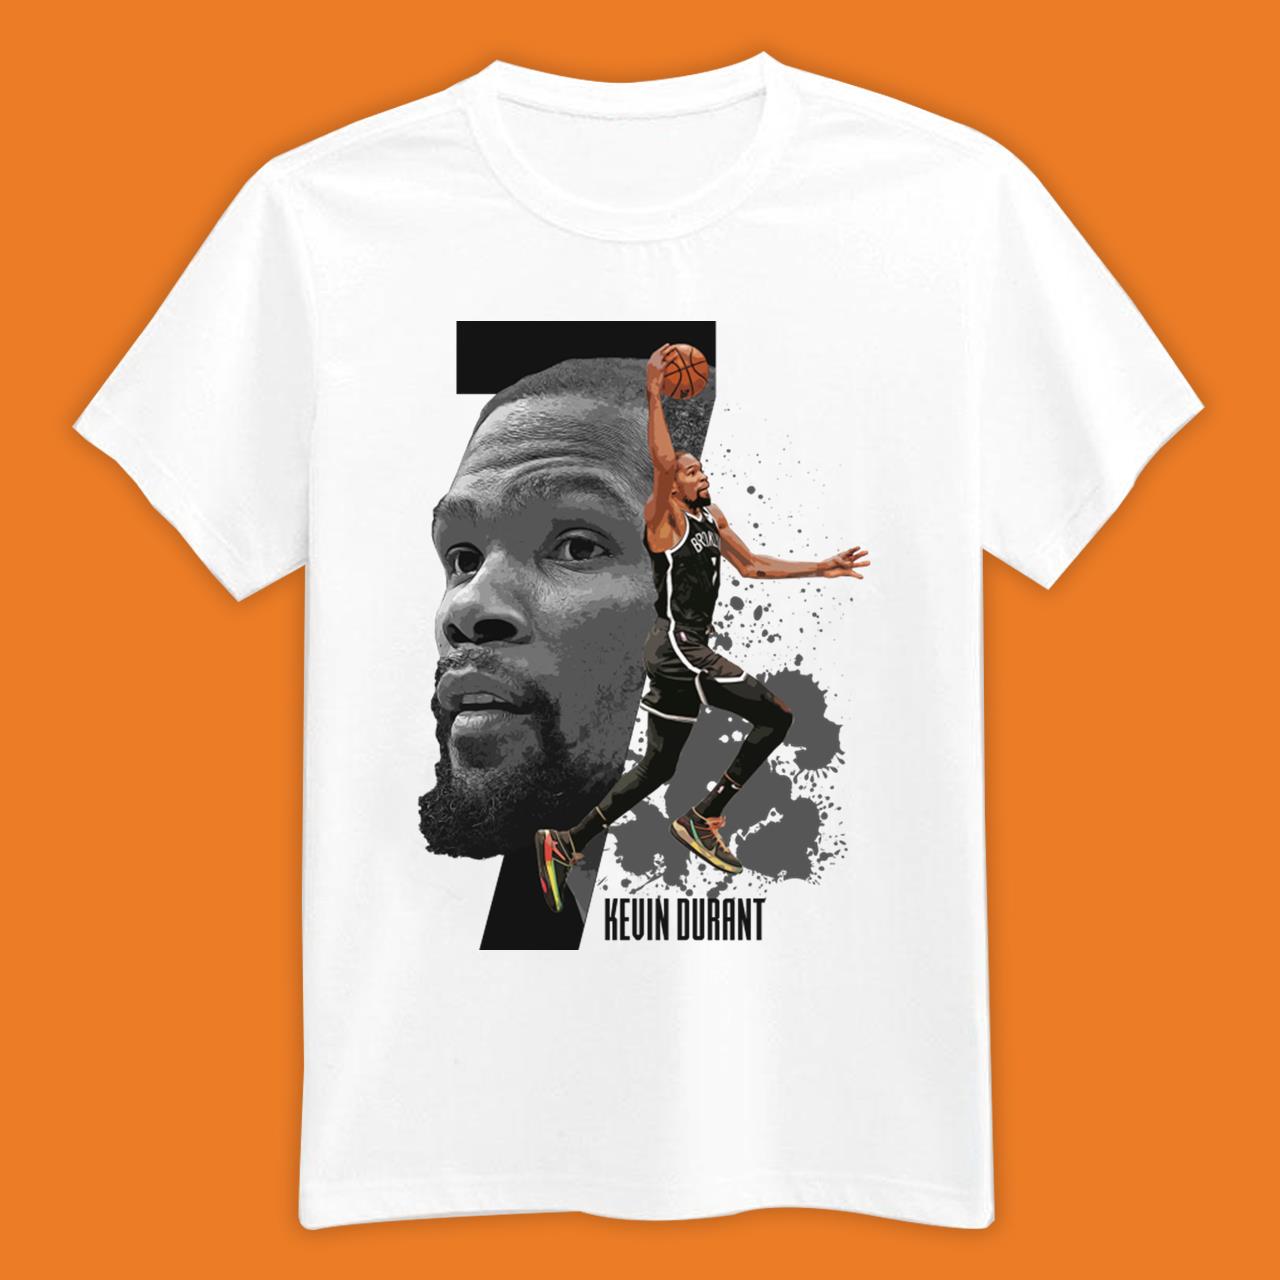 Kevin Durant Shirts